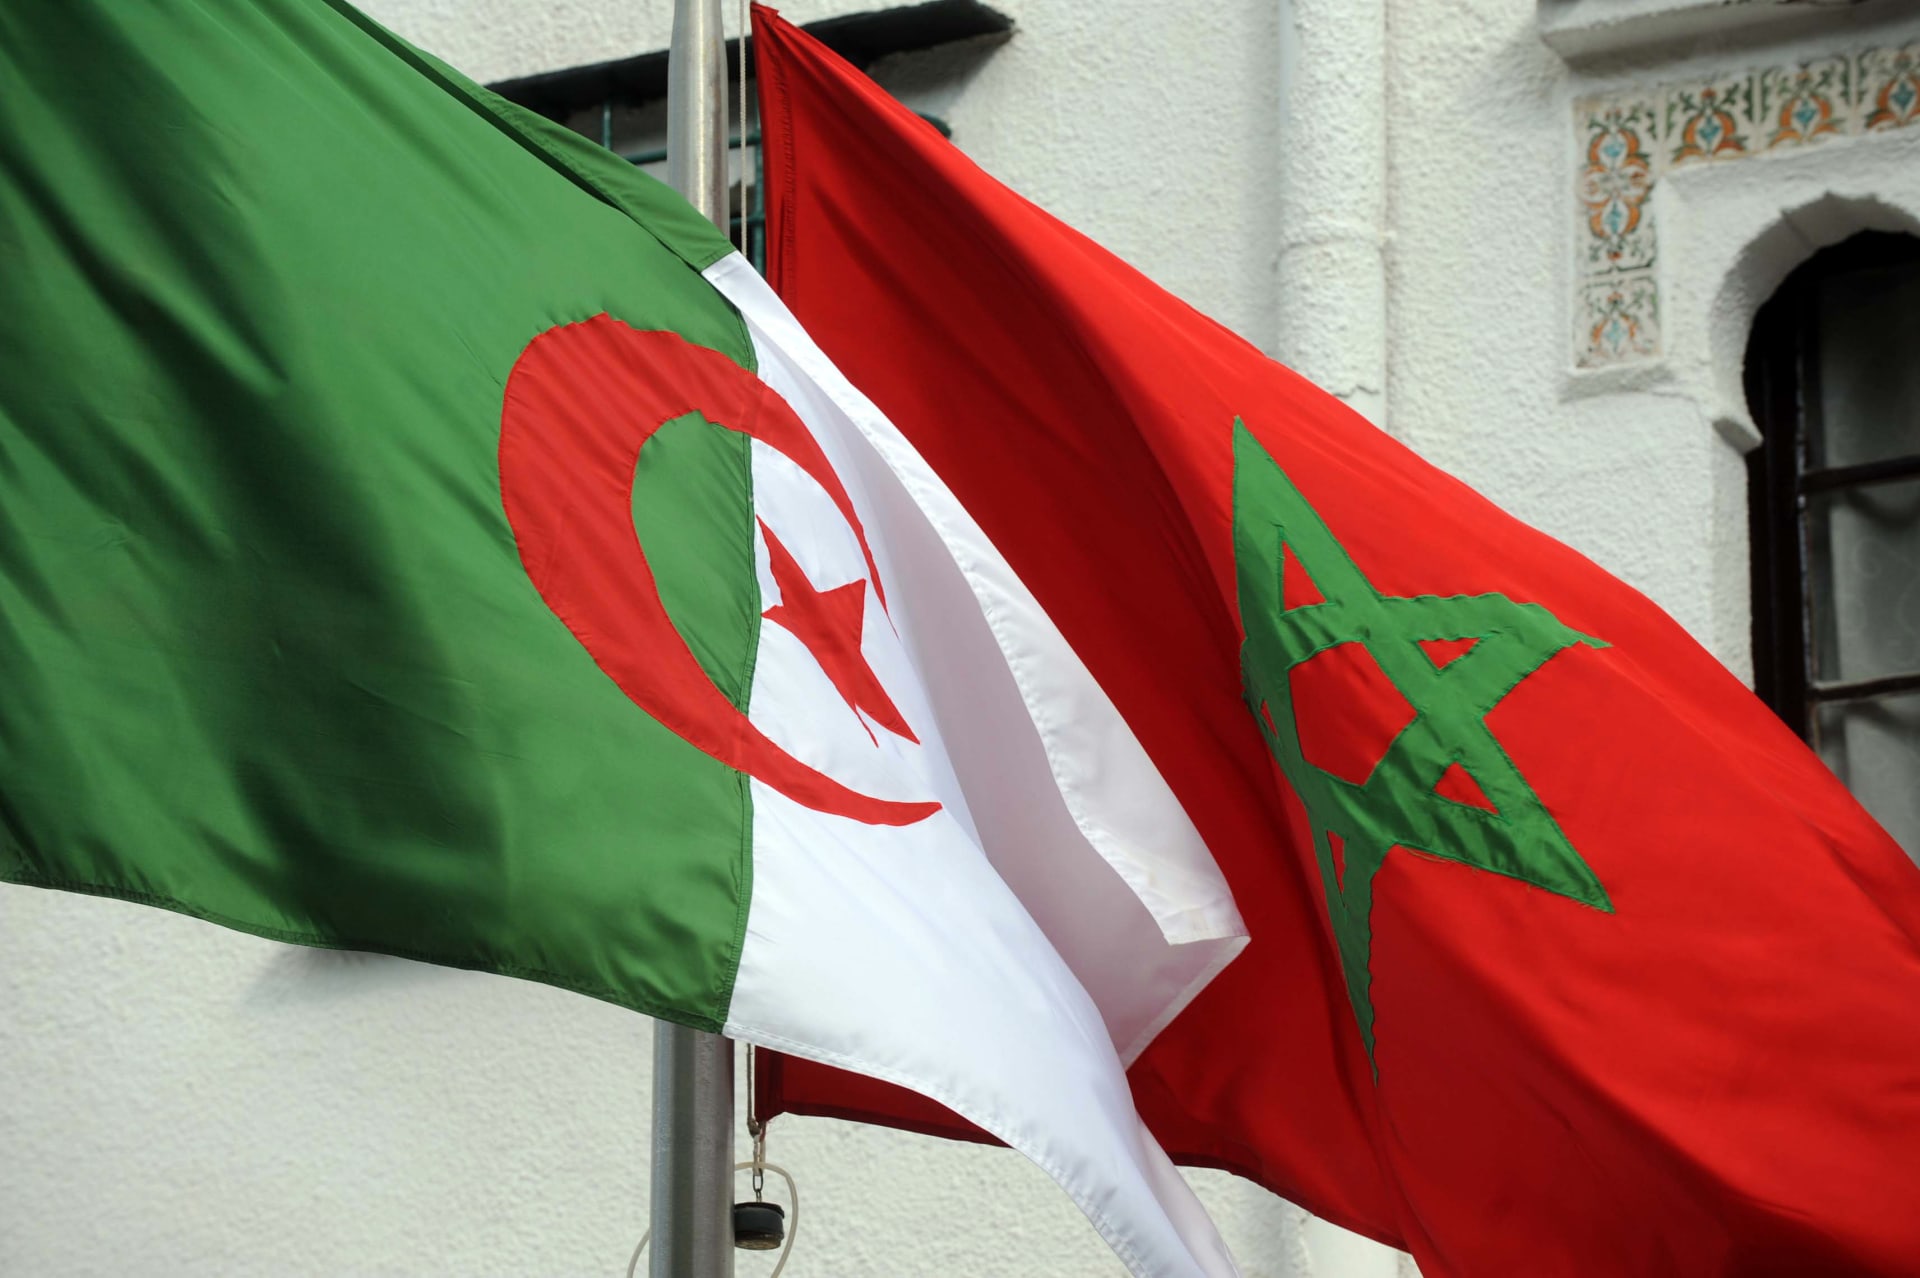 فرنسا تؤكد موت أحد مواطنيها في الجزائر بعد تقارير مغربية عن مقتل 2 برصاص خفر السواحل